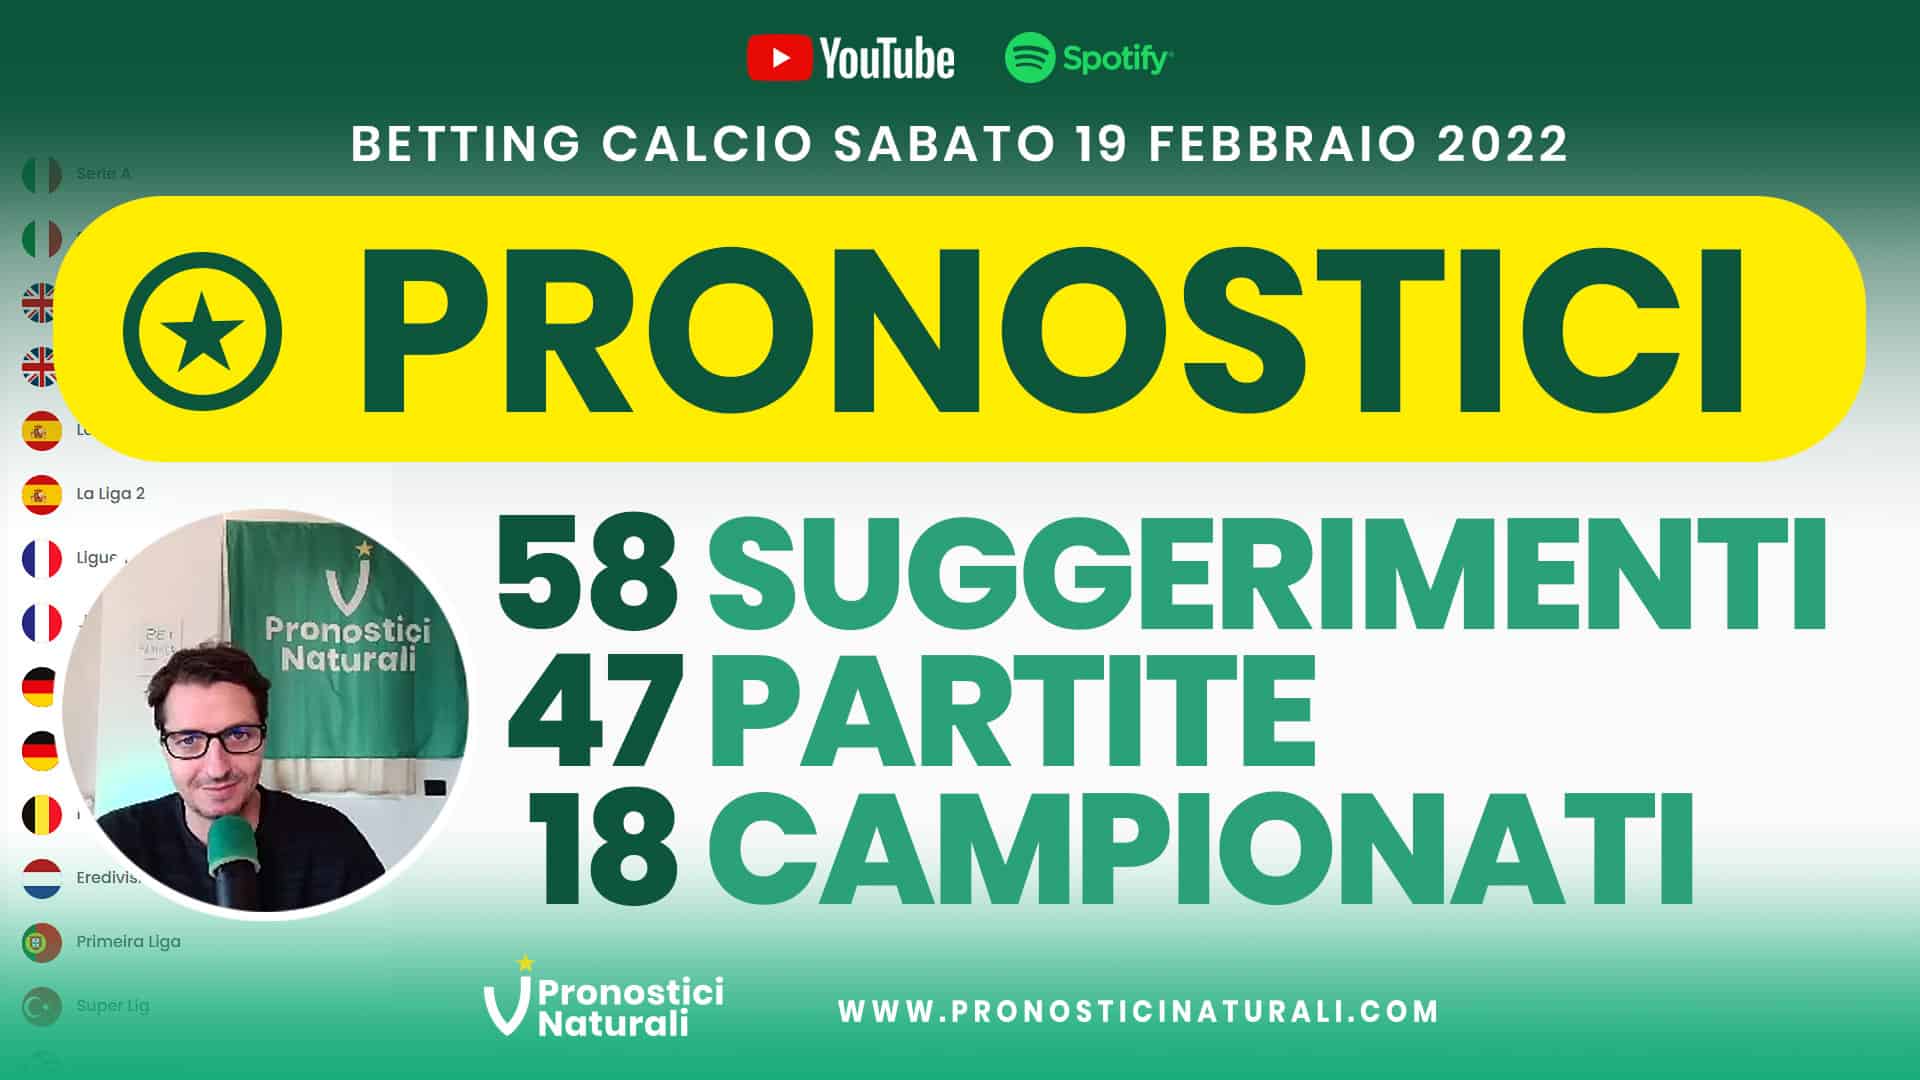 Pronostici Naturali Video Analisi Scommesse Betting Calcio Analisi Pre Partite Sabato 19 Febbraio 2022